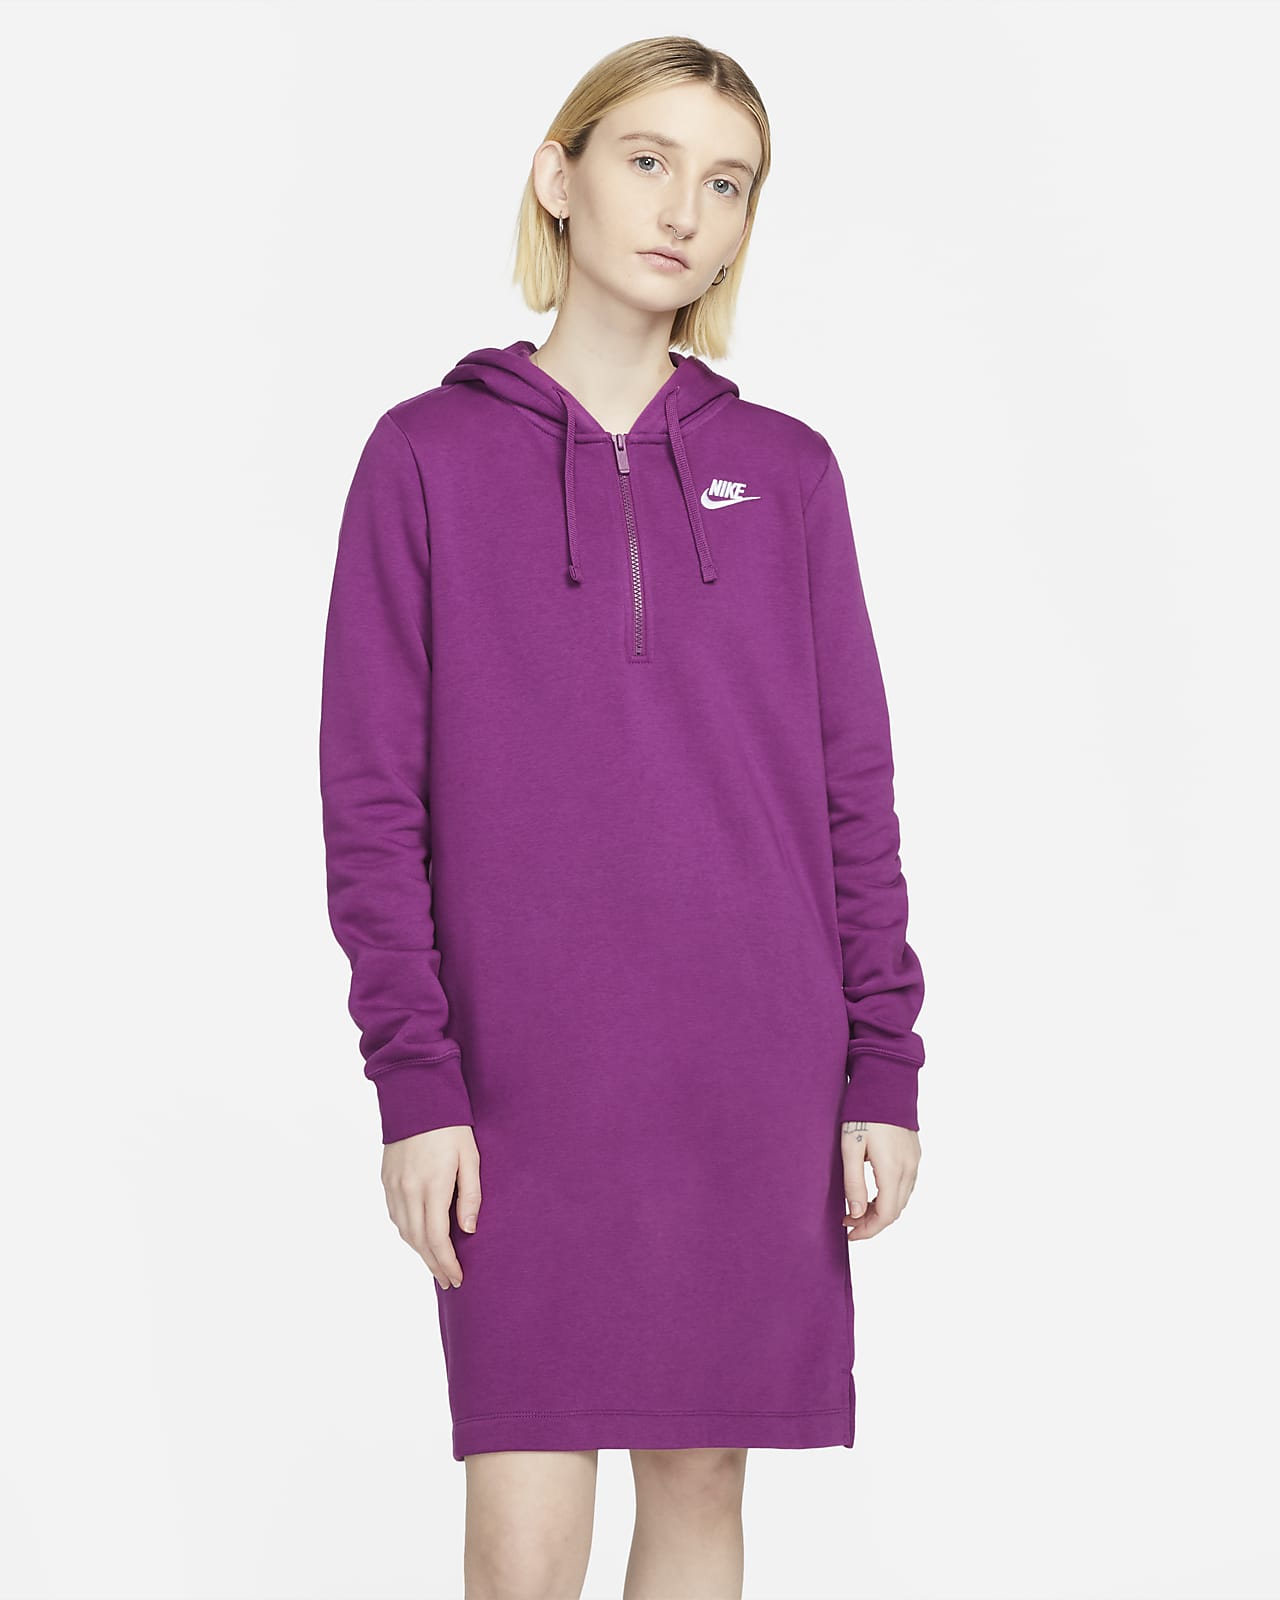 Betrouwbaar Kosten Worden Nike Sportswear Club Fleece Women's Hoodie Dress. Nike.com